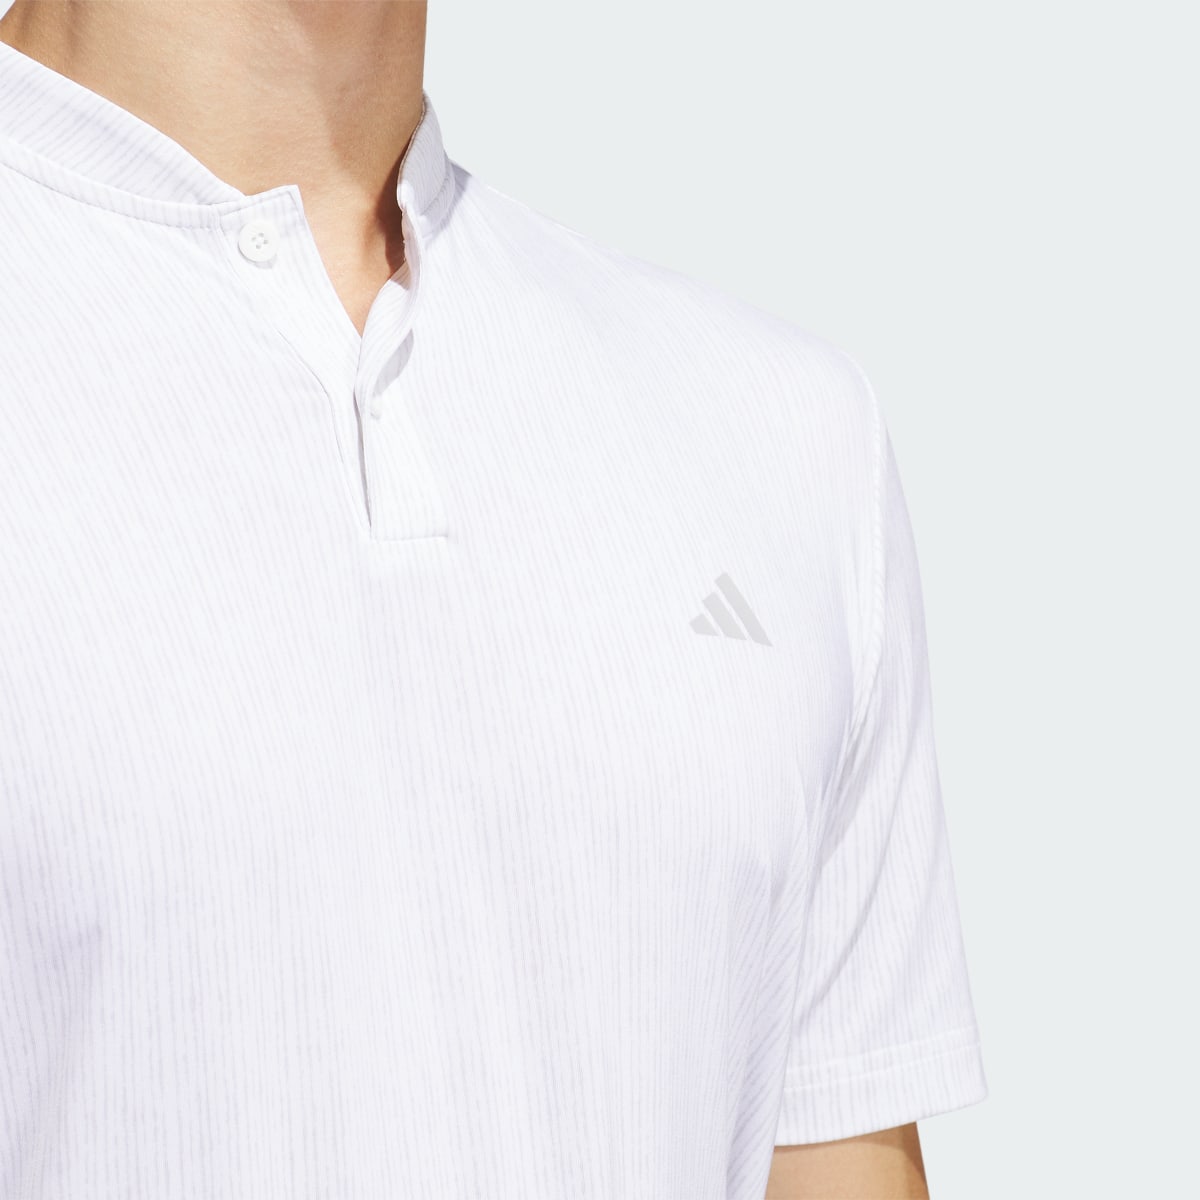 Adidas Ultimate365 Printed Polo Shirt. 6